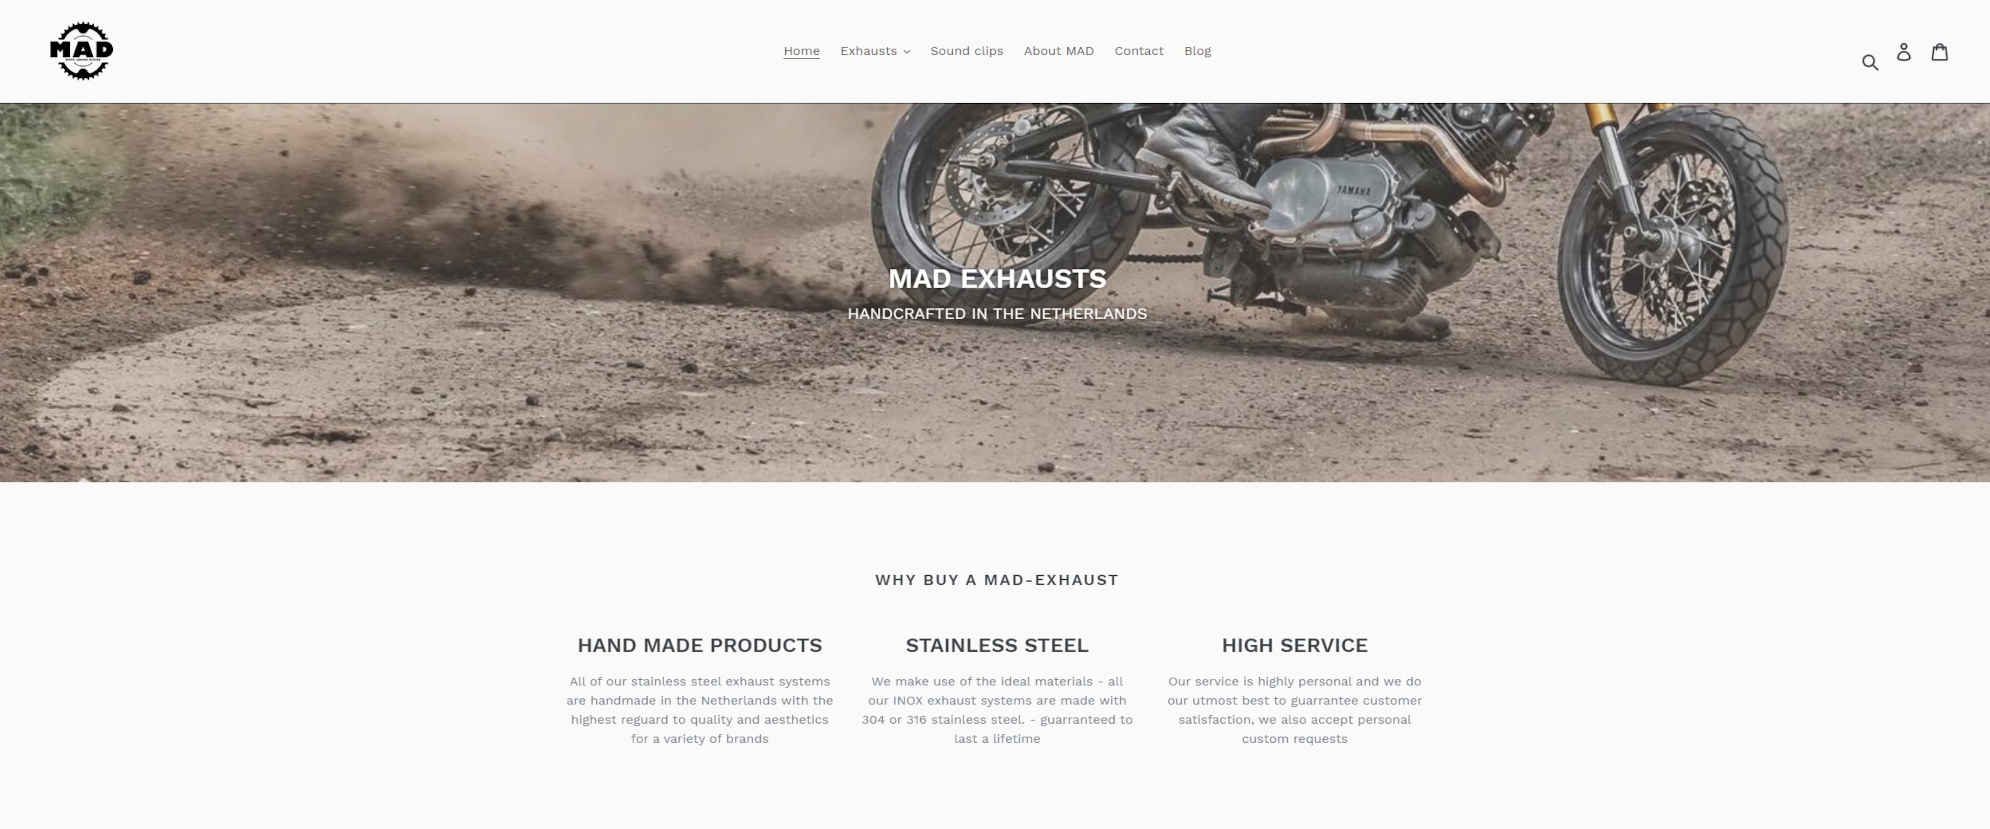 Mad Exhaust website header